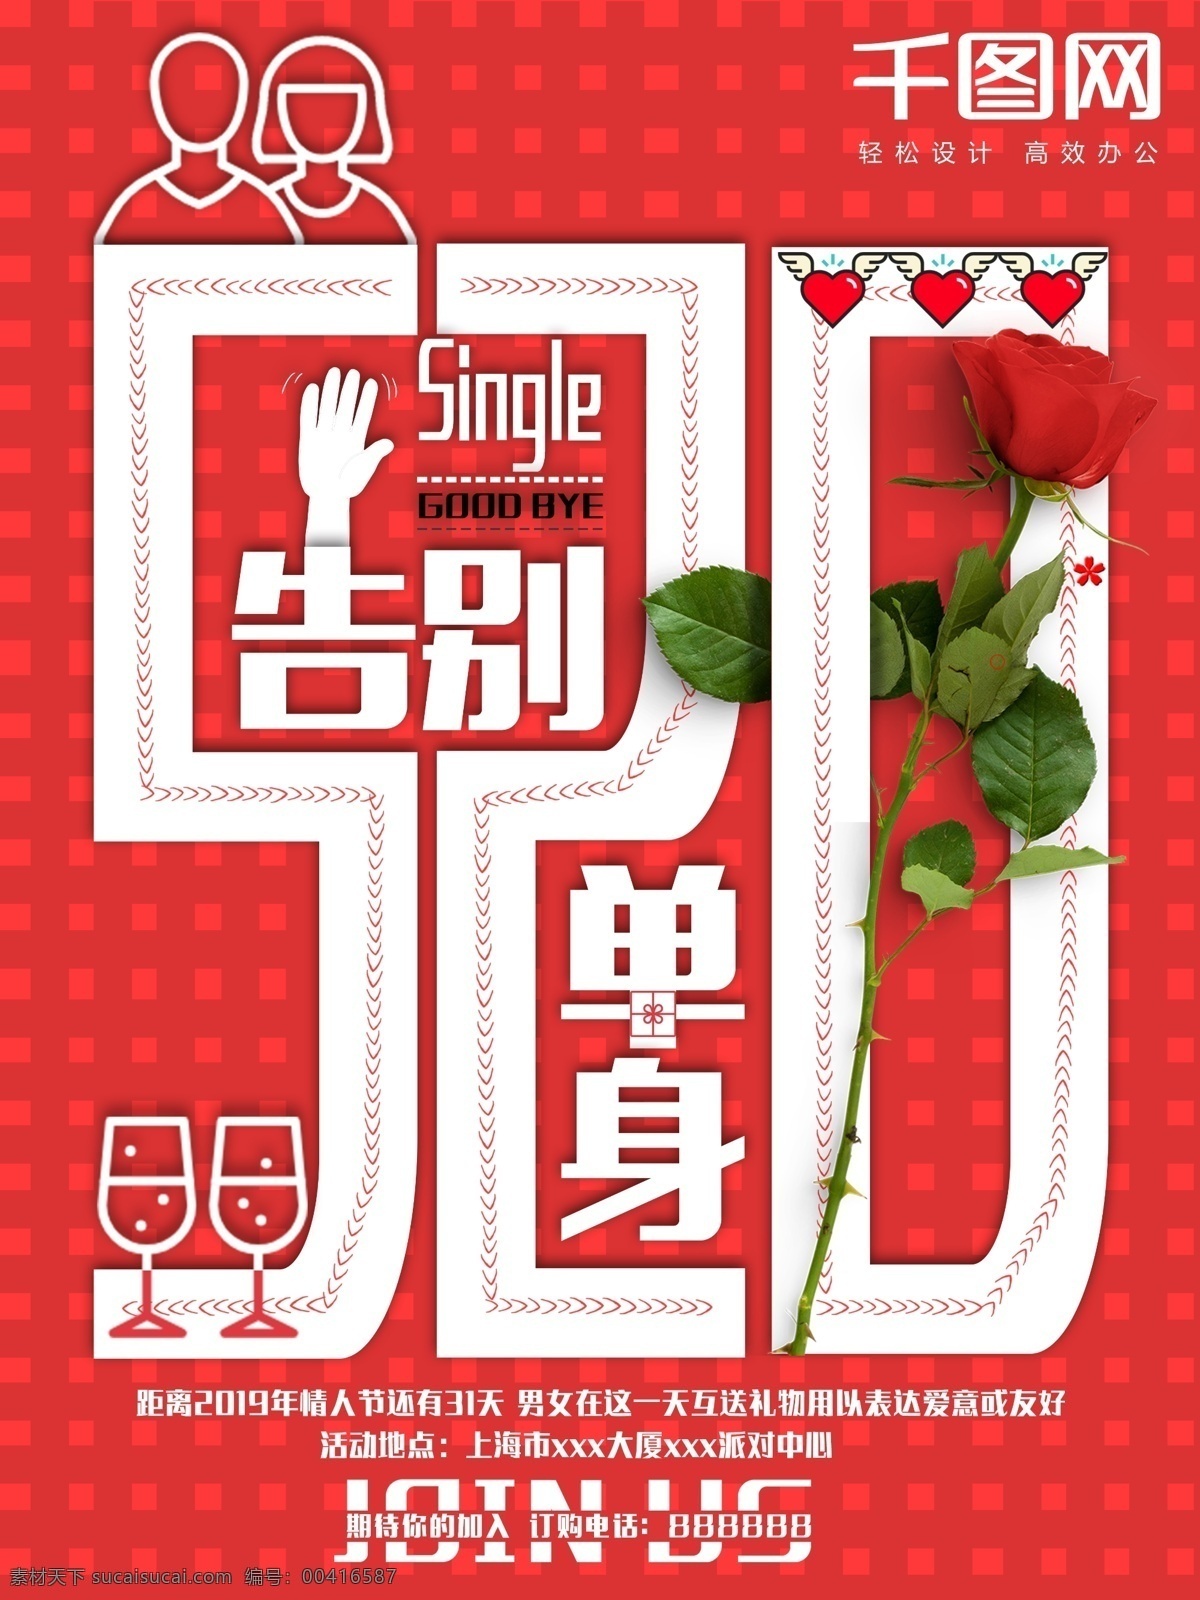 情人节 告别 单身 红色 520 清新 海报 创意 告别单身 脱单 单身狗